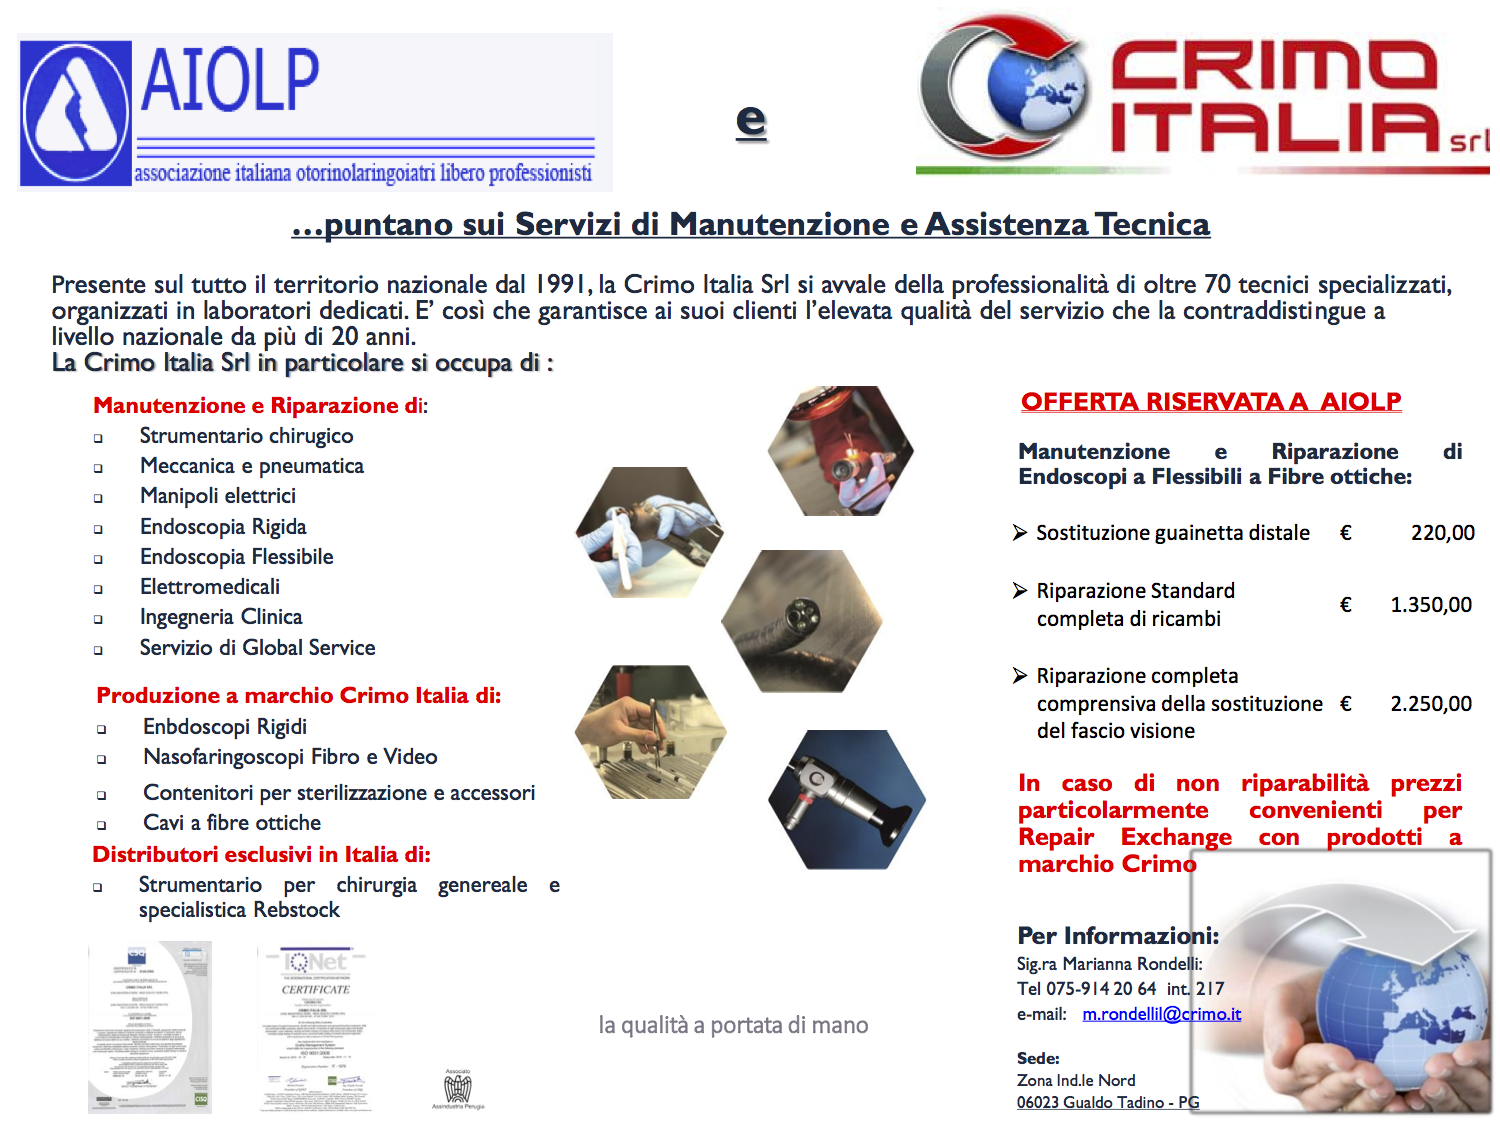 Offerta Crimo Italia per AIOLP - settembre 2015